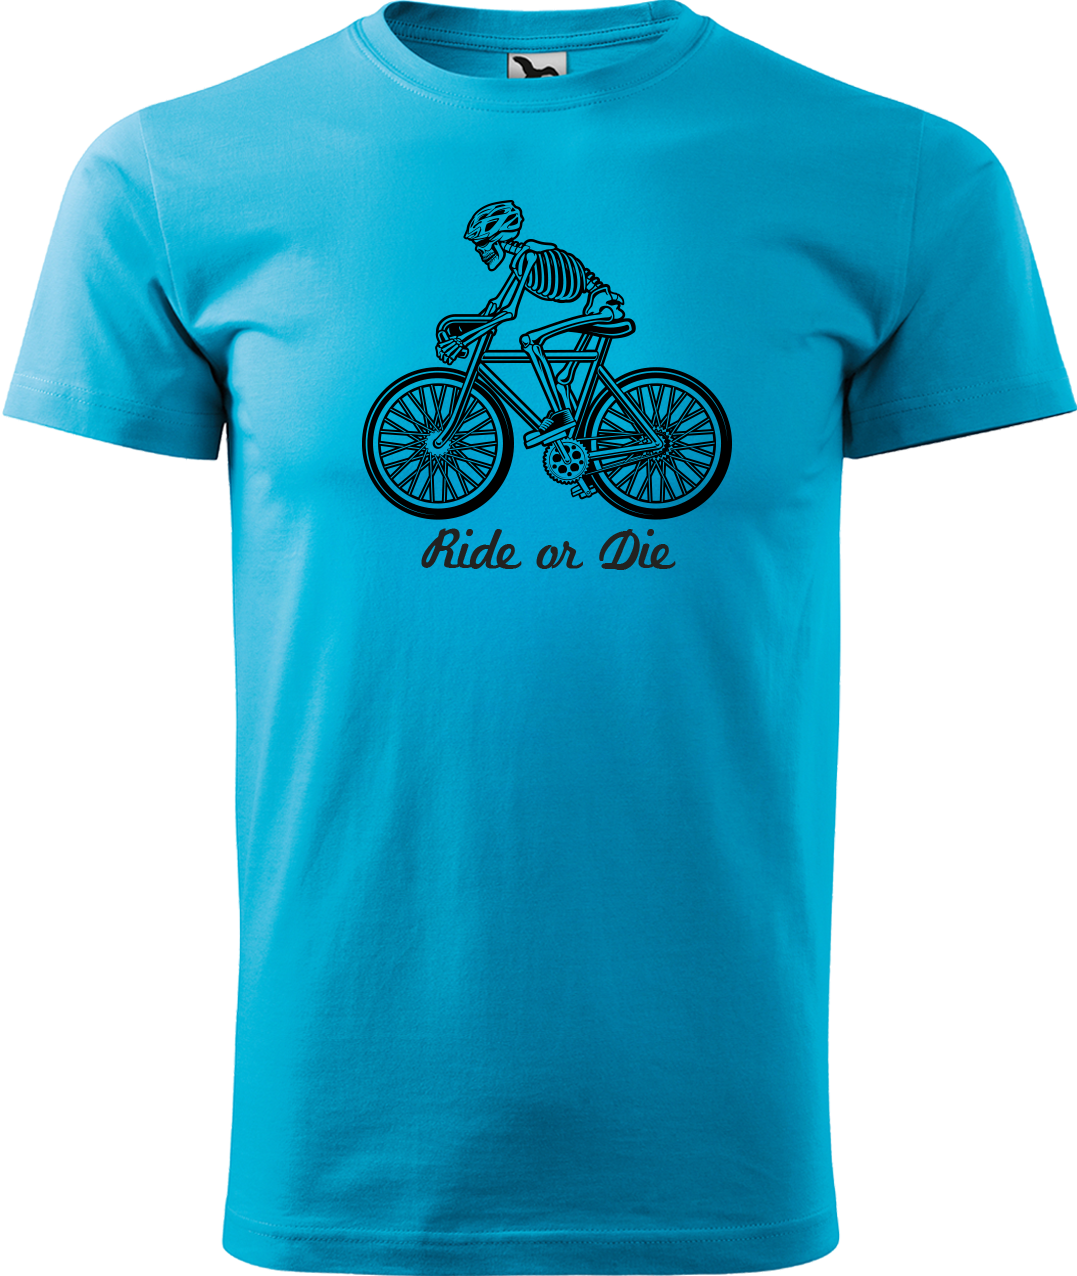 Pánské tričko pro cyklistu - Ride or Die Velikost: XL, Barva: Tyrkysová (44)